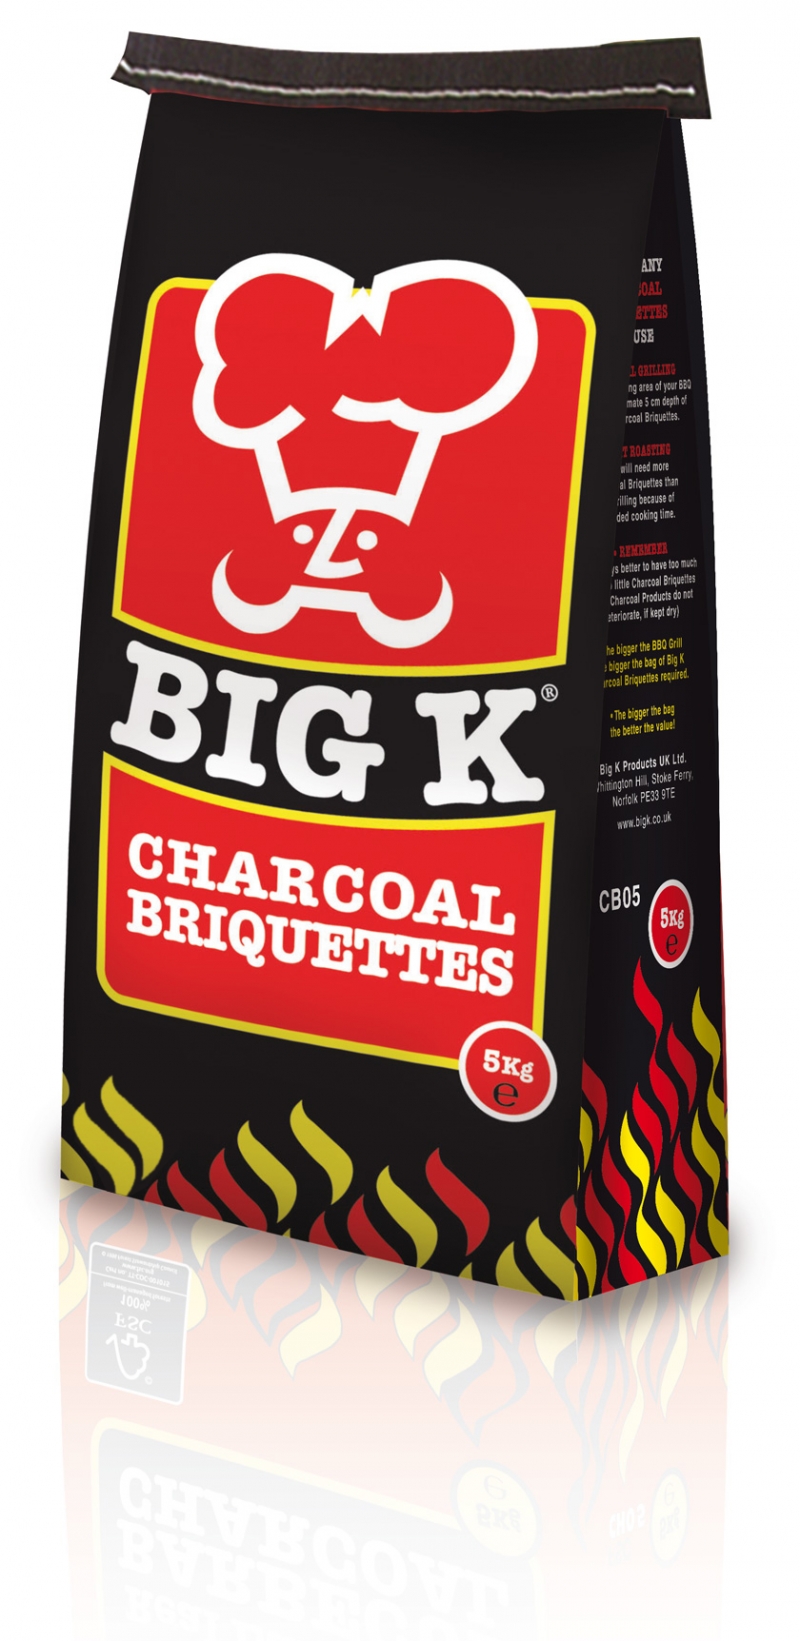 big k charcoal briquettes